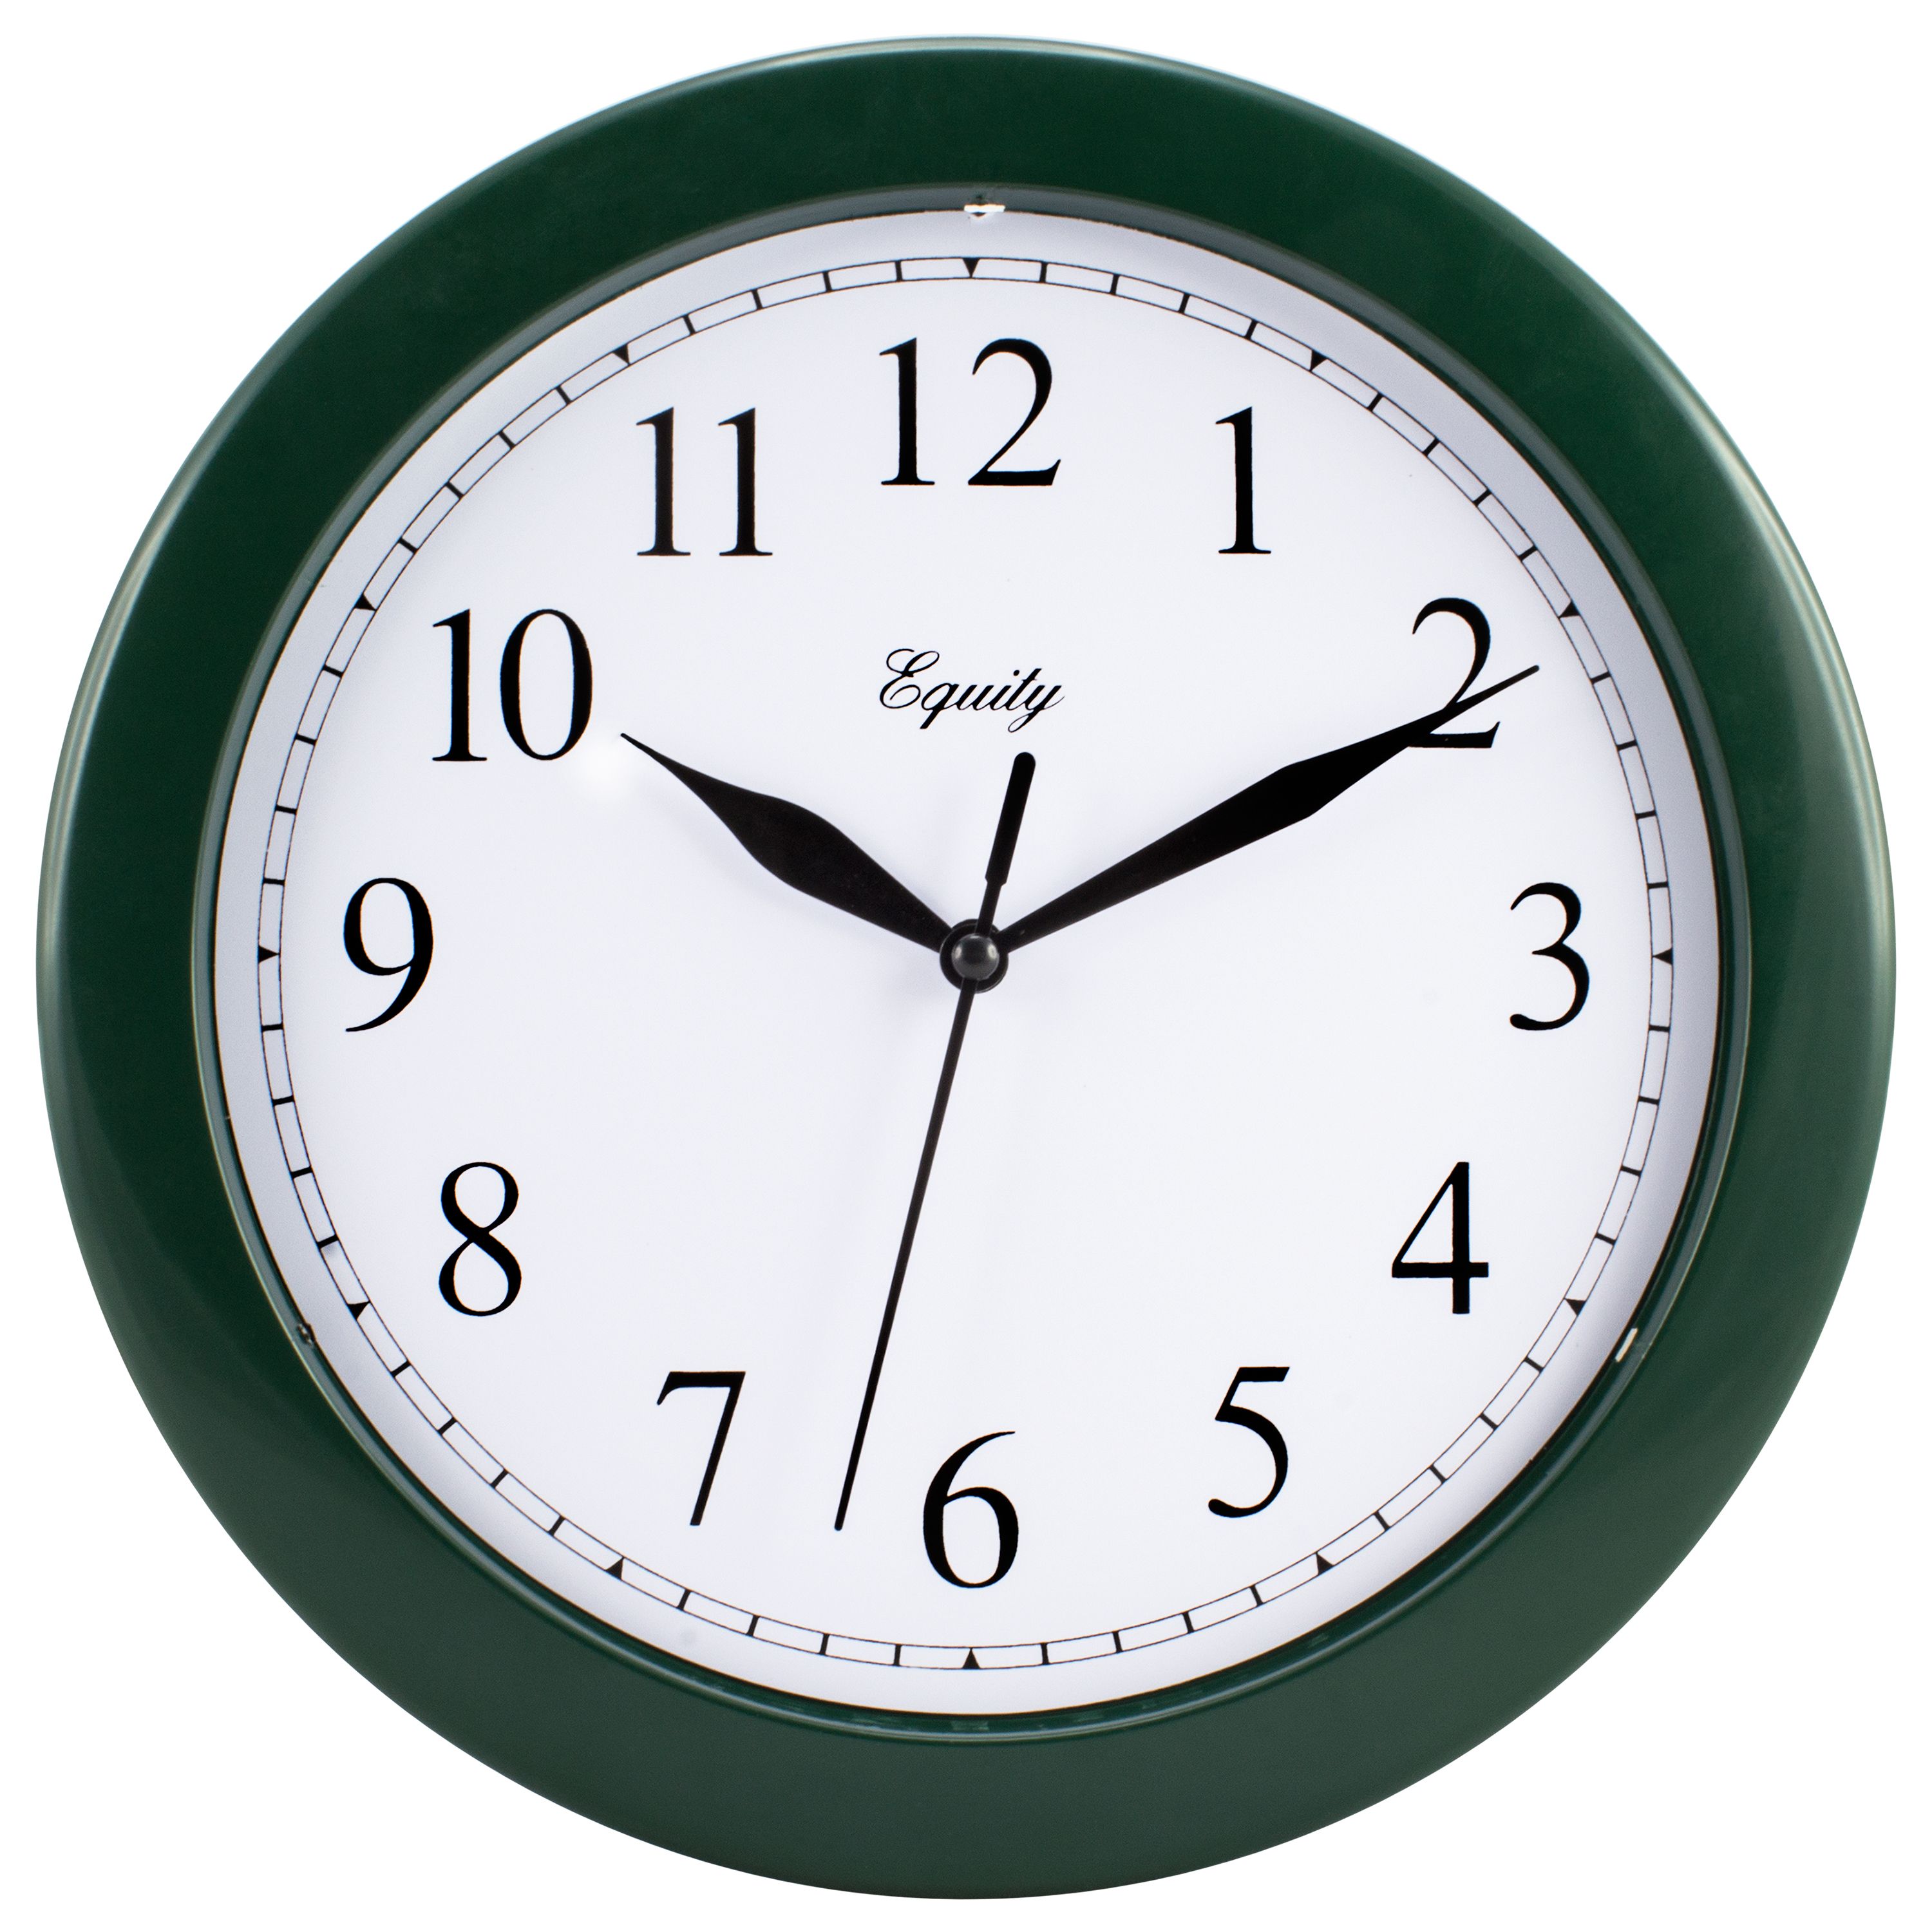 Picture of La Crosse Technology Ltd 25205 10 in. Green Plastic Wall Clock